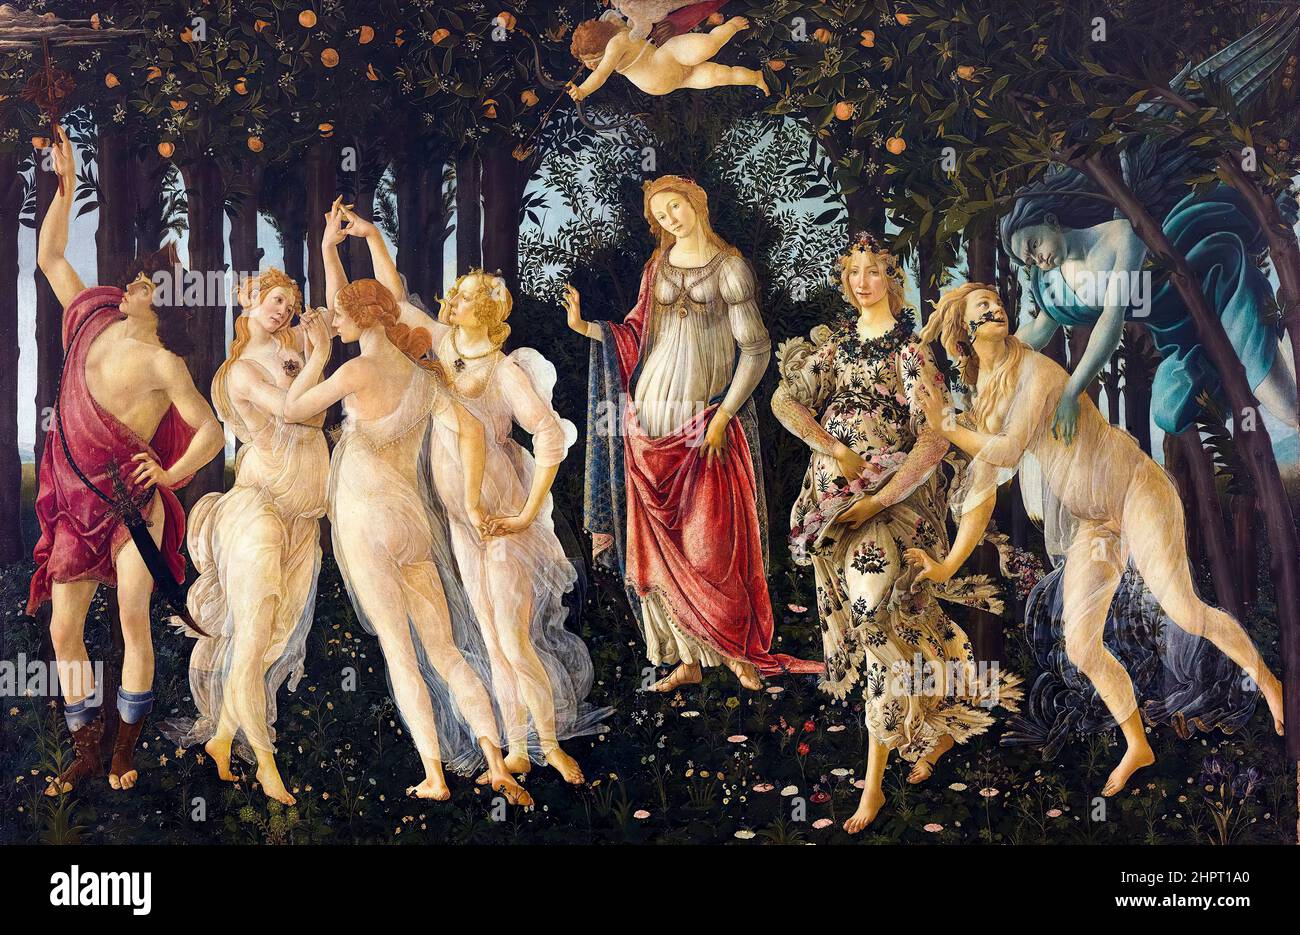 Sandro Botticelli, Primavera (Printemps), peinture Renaissance, vers 1480 Banque D'Images